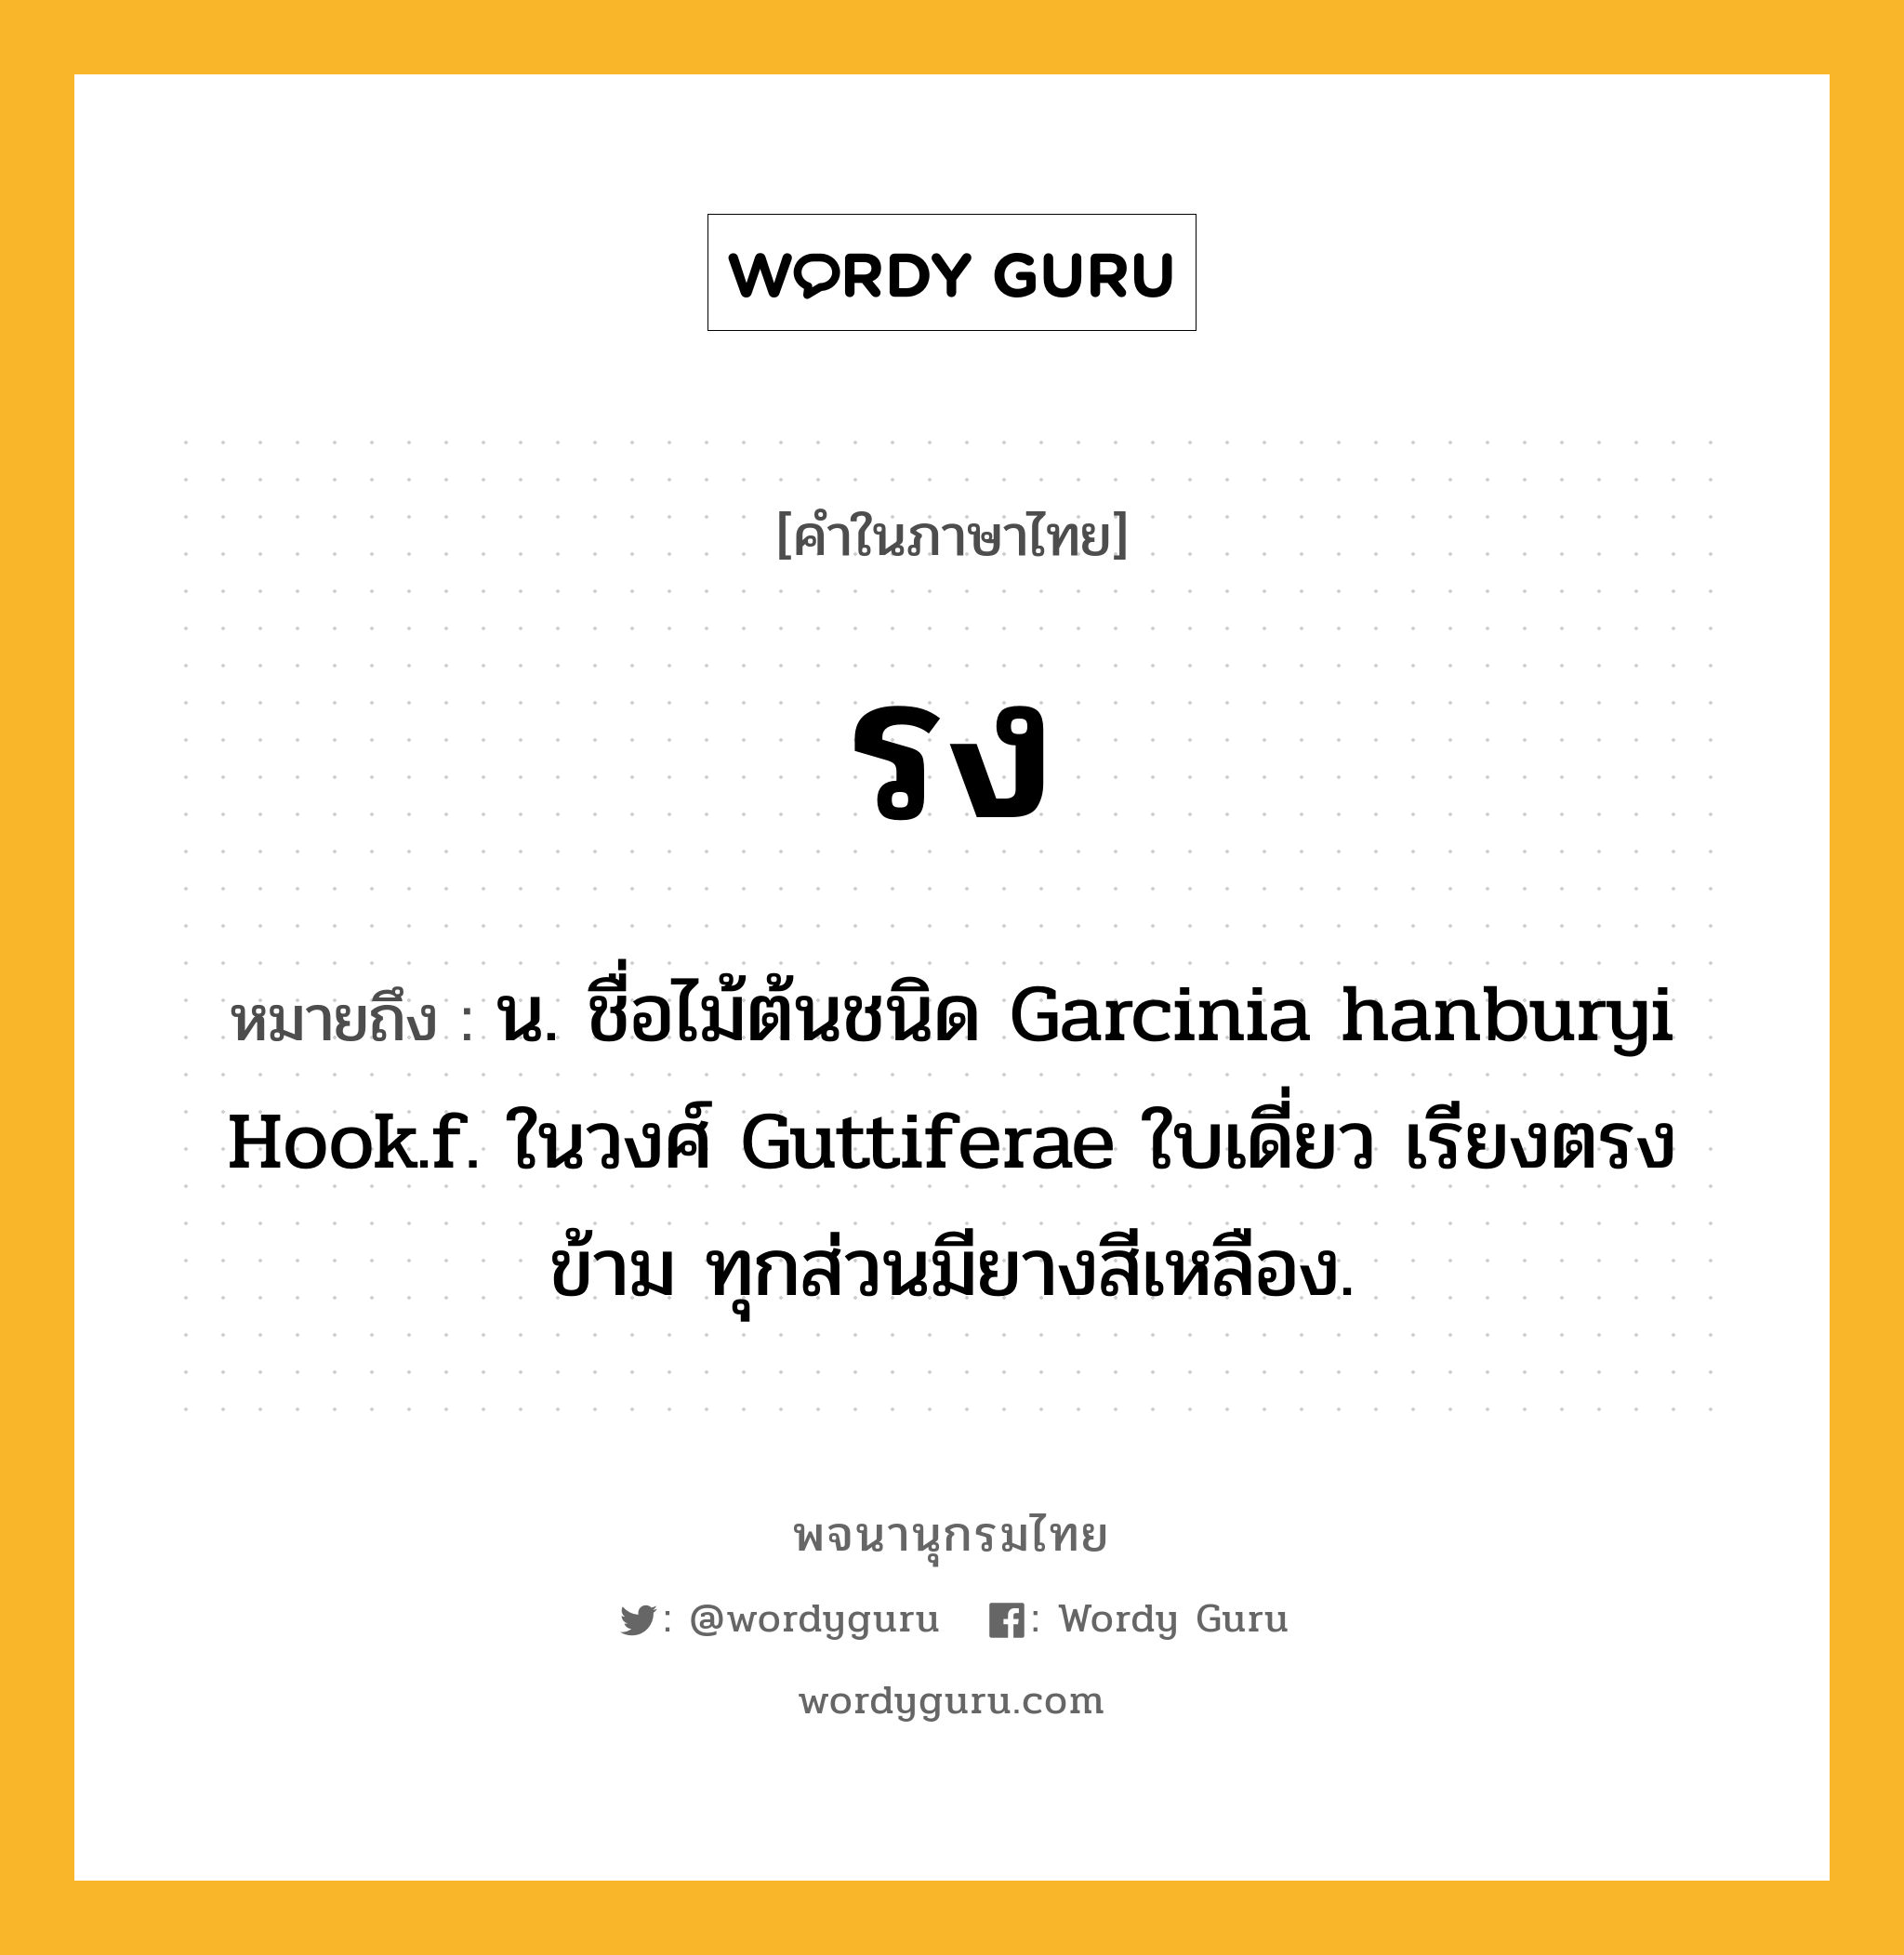 รง หมายถึงอะไร?, คำในภาษาไทย รง หมายถึง น. ชื่อไม้ต้นชนิด Garcinia hanburyi Hook.f. ในวงศ์ Guttiferae ใบเดี่ยว เรียงตรงข้าม ทุกส่วนมียางสีเหลือง.